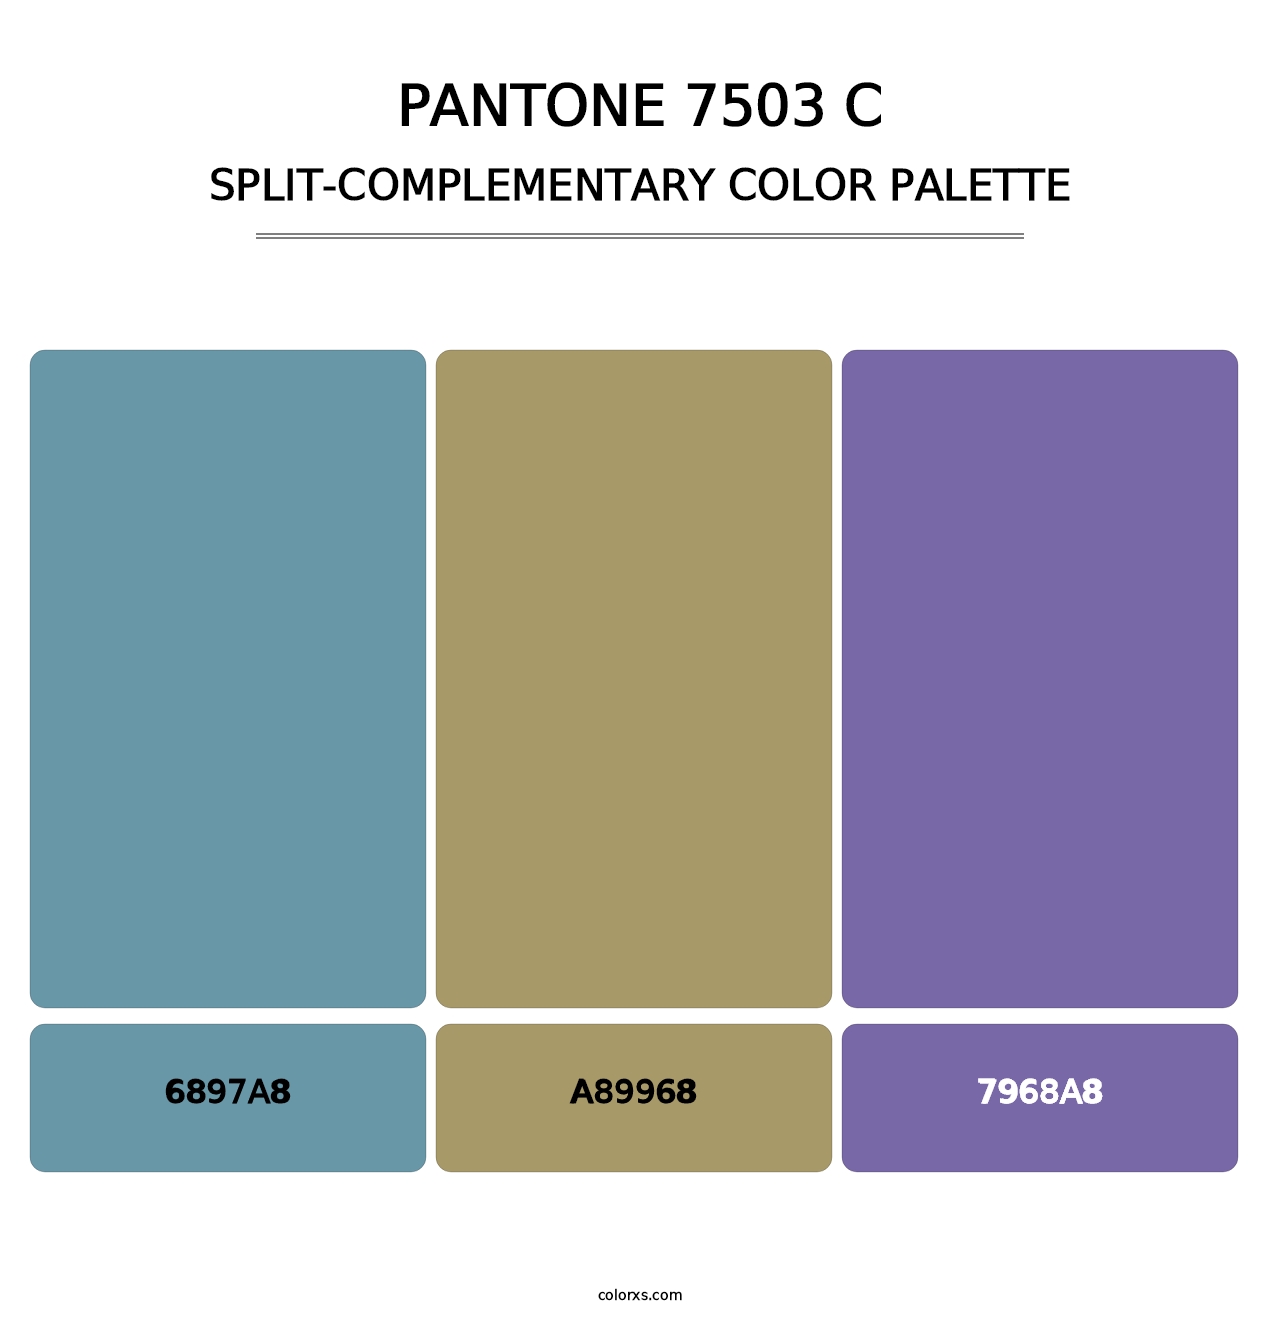 PANTONE 7503 C - Split-Complementary Color Palette